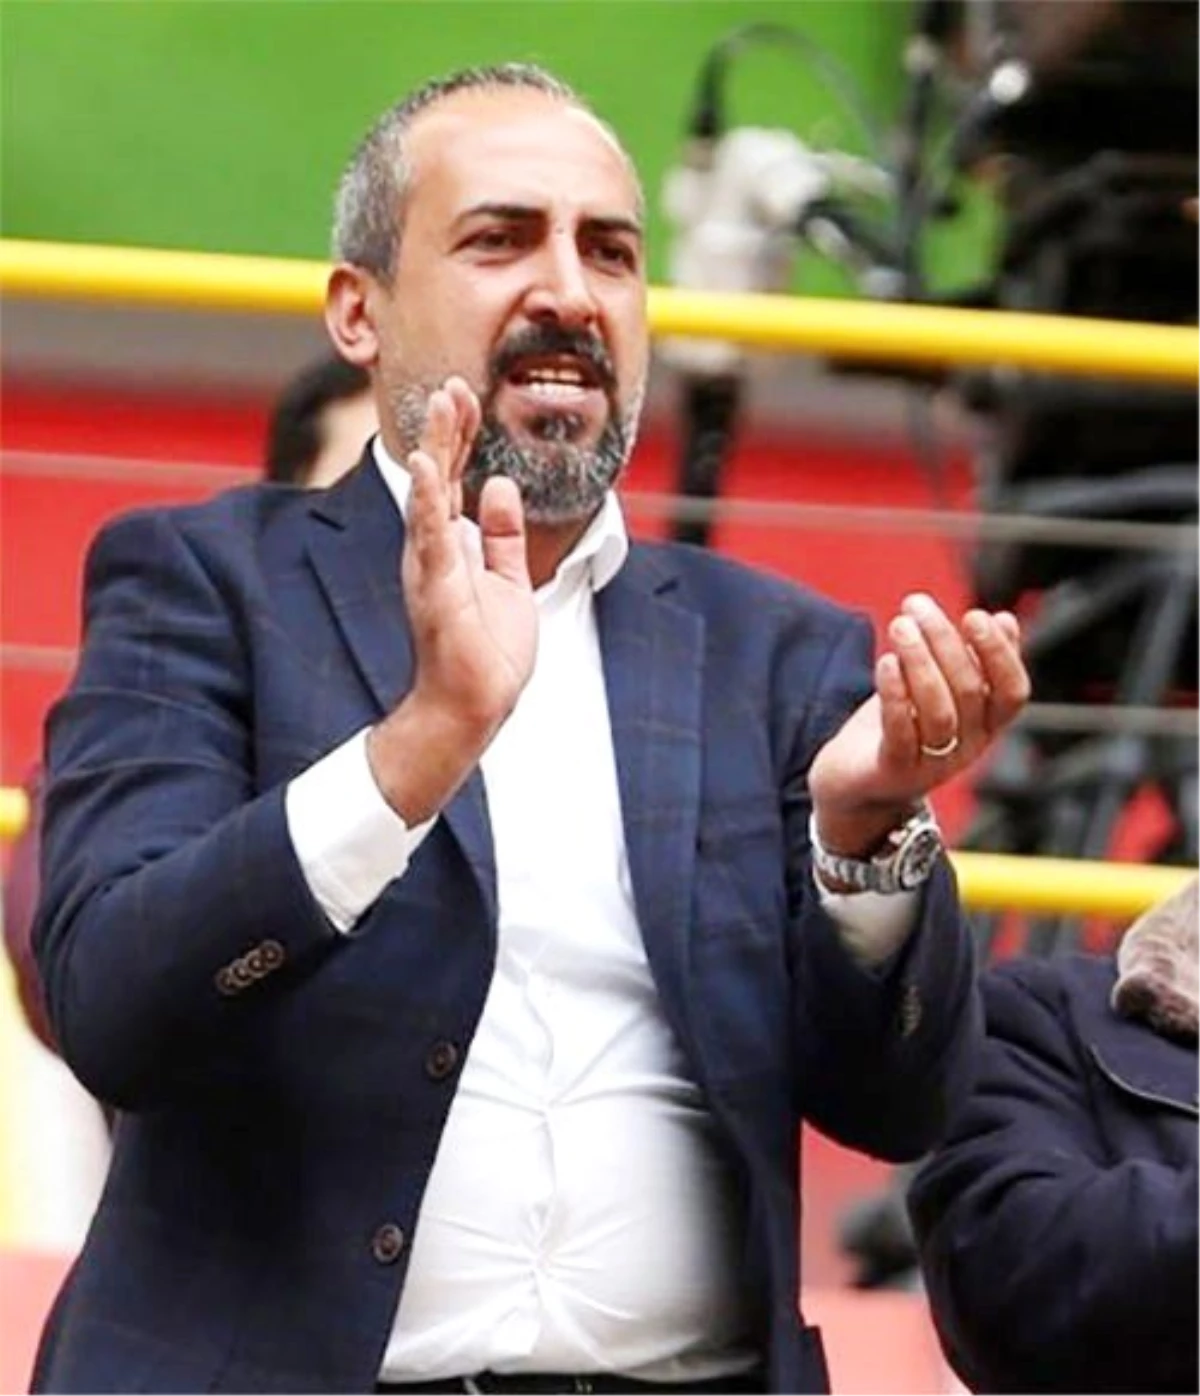 Kayserispor Basın Sözcüsü Tokgöz: "Pedro\'ya ceza verilmesini önereceğim"